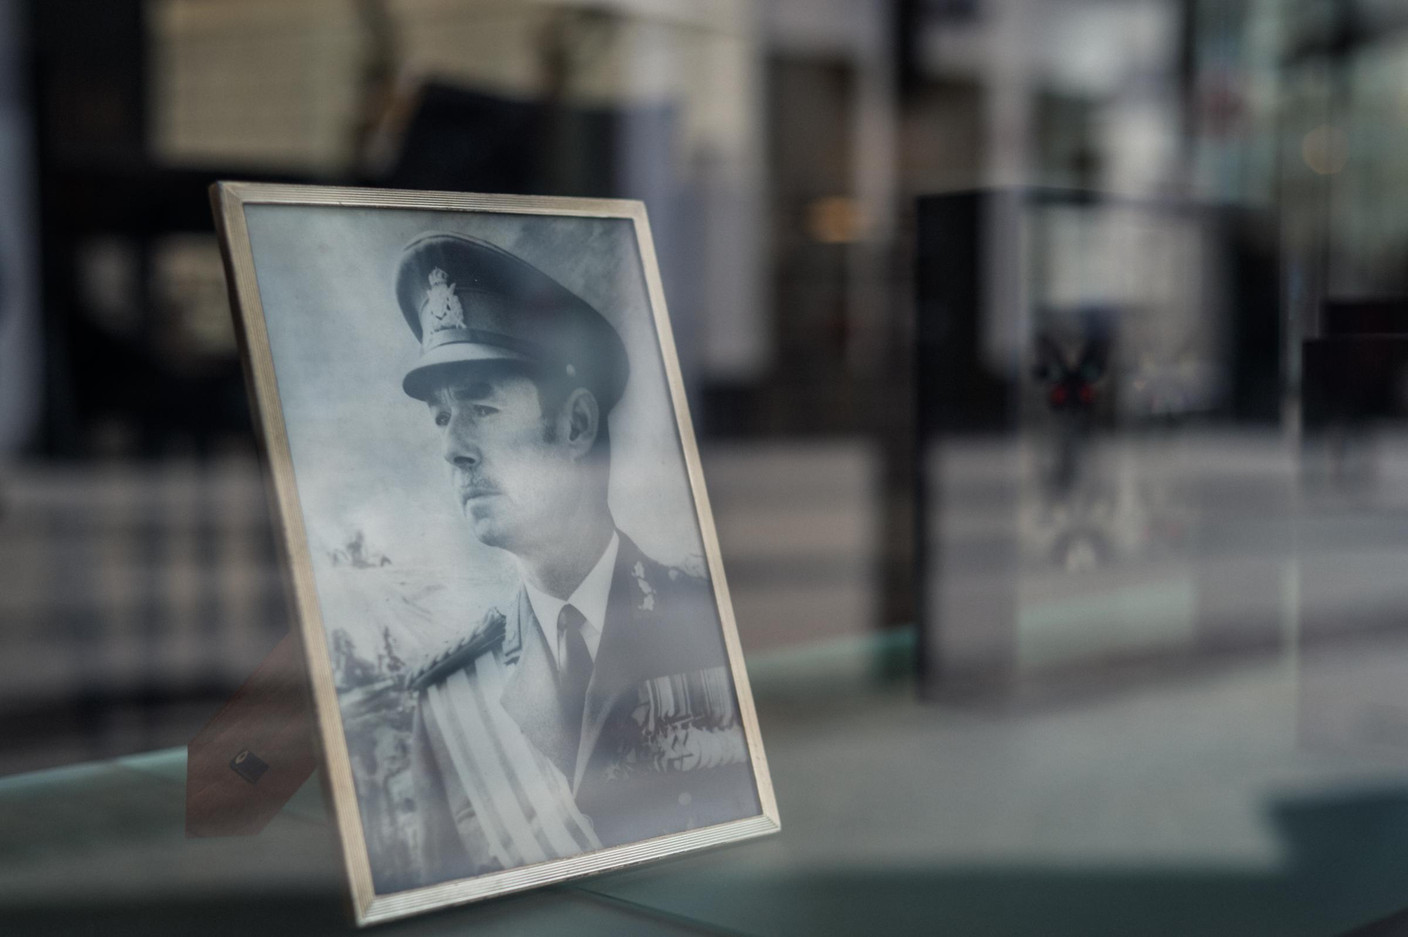 Des portraits en l'hommage du Grand-Duc Jean ont été placés en vitrines par des commerçants (Photo: Mike Zenari)